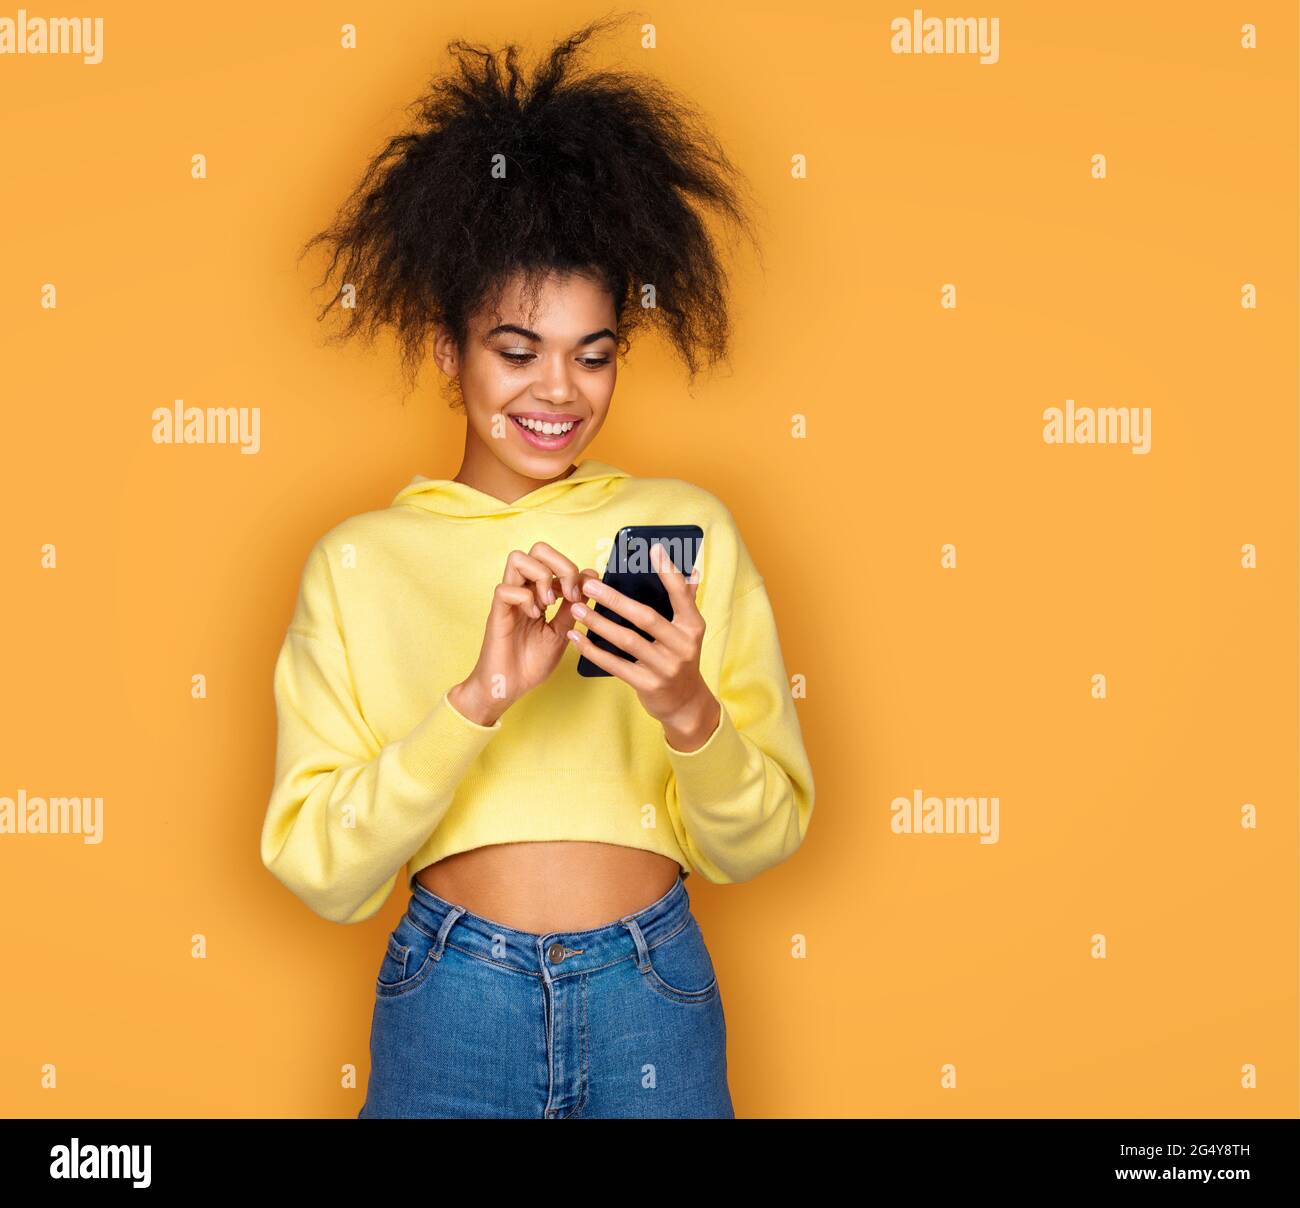 La ragazza usa il telefono, controlla la presenza di nuovi messaggi. Foto di ragazza afroamericana su sfondo giallo Foto Stock